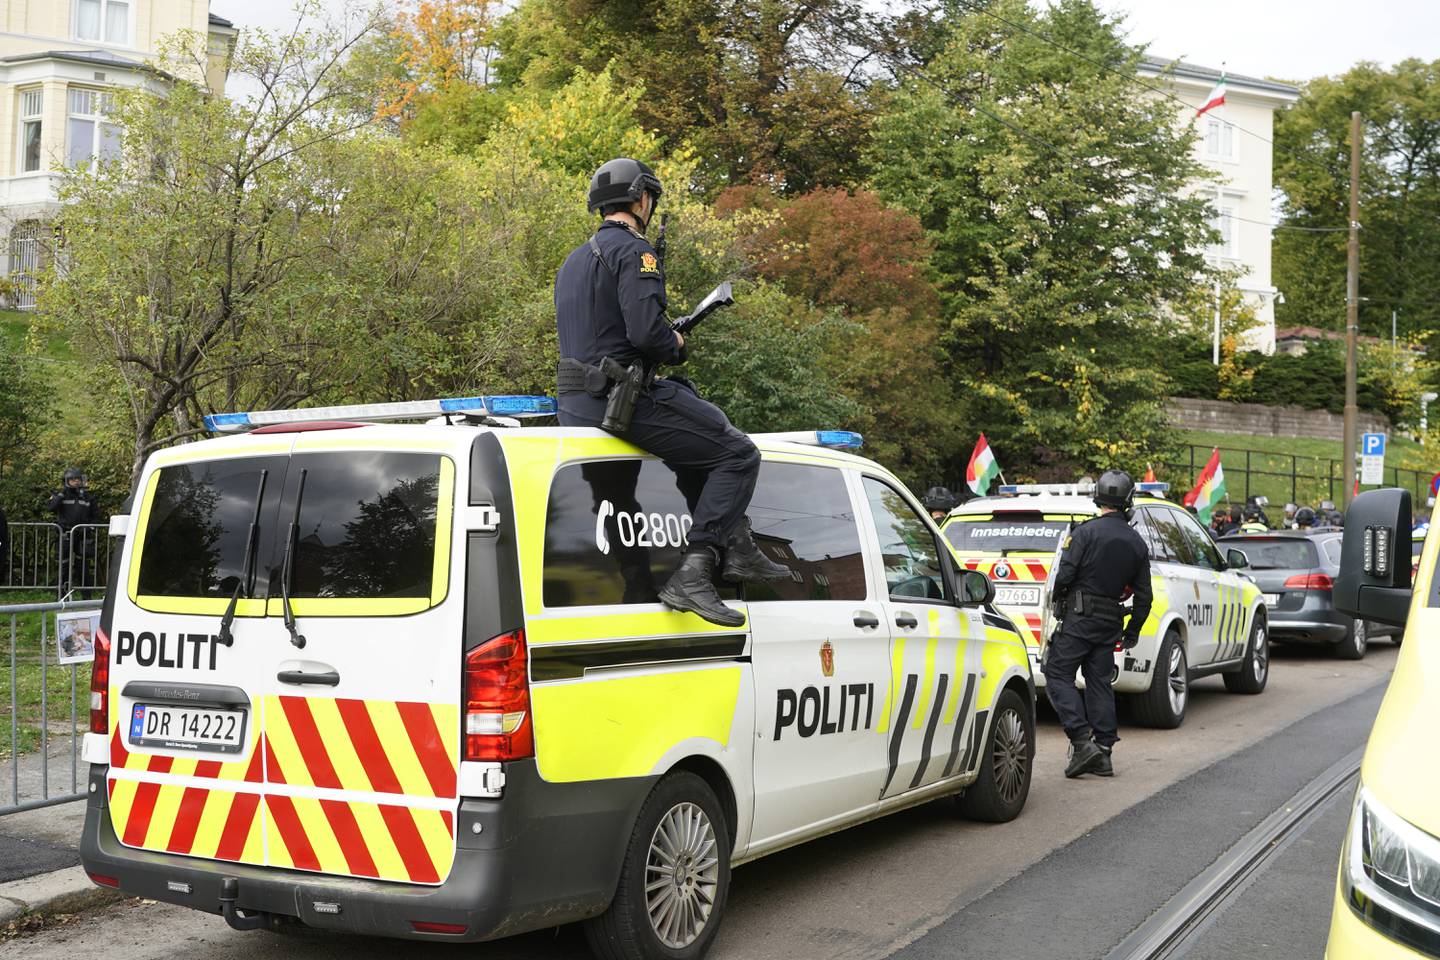 Politiet mener de har kontroll etter at det oppsto en voldelig demonstrasjon ved Irans ambassade i Oslo torsdag ettermiddag. 
Foto: Terje Pedersen / NTB